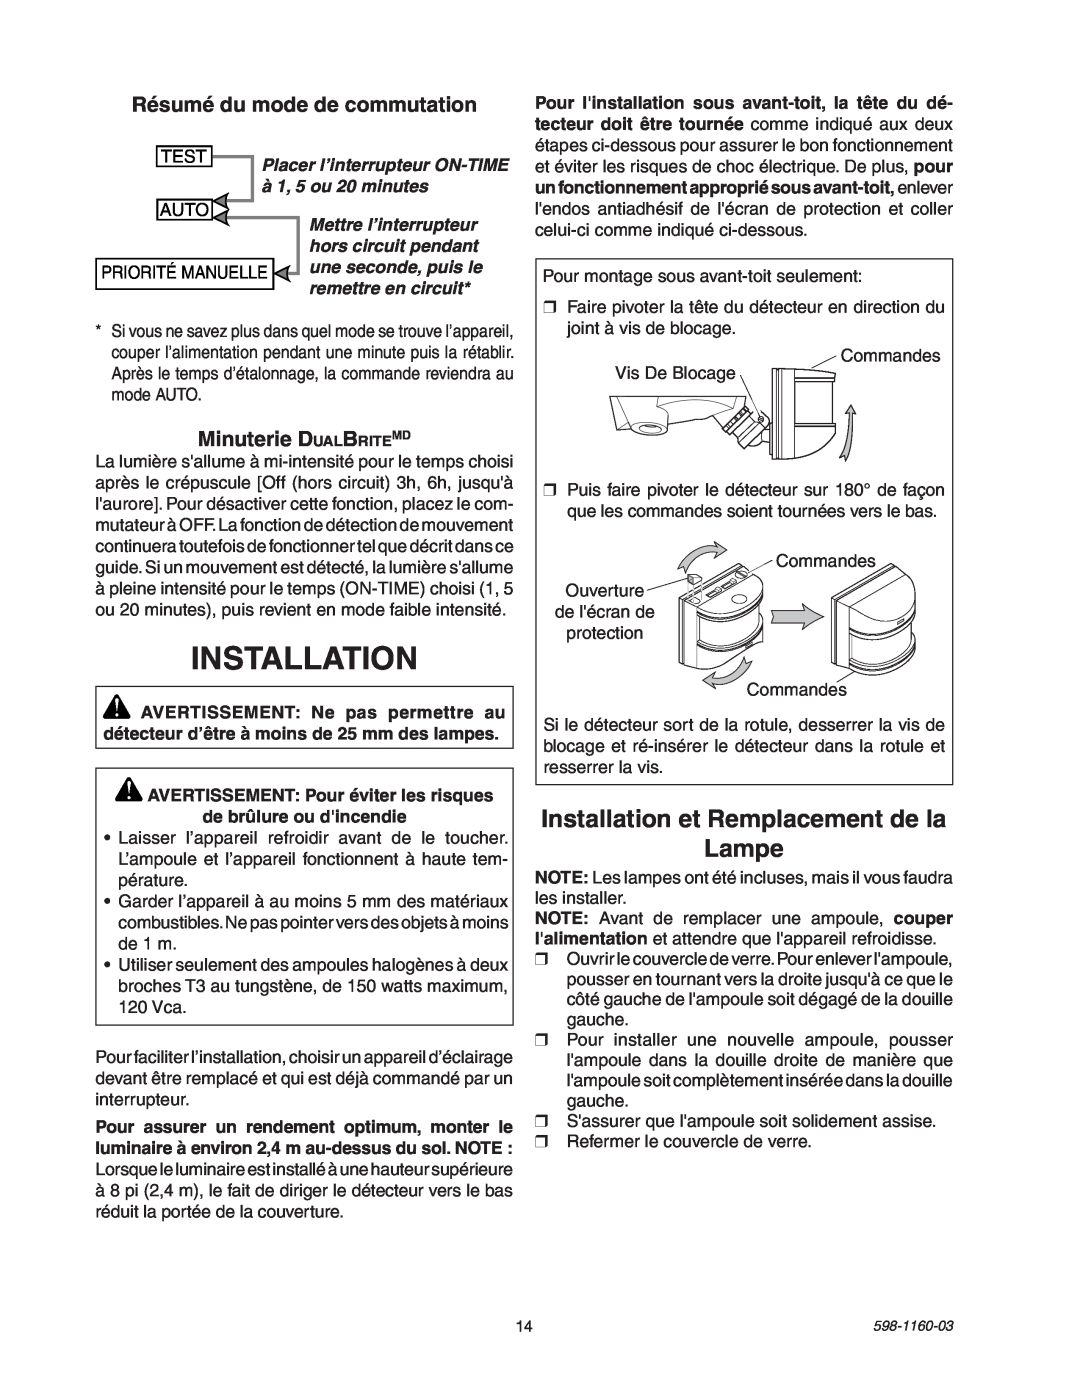 Heath Zenith SH-5512 Installation et Remplacement de la Lampe, Résumé du mode de commutation, Minuterie DualBriteMD 